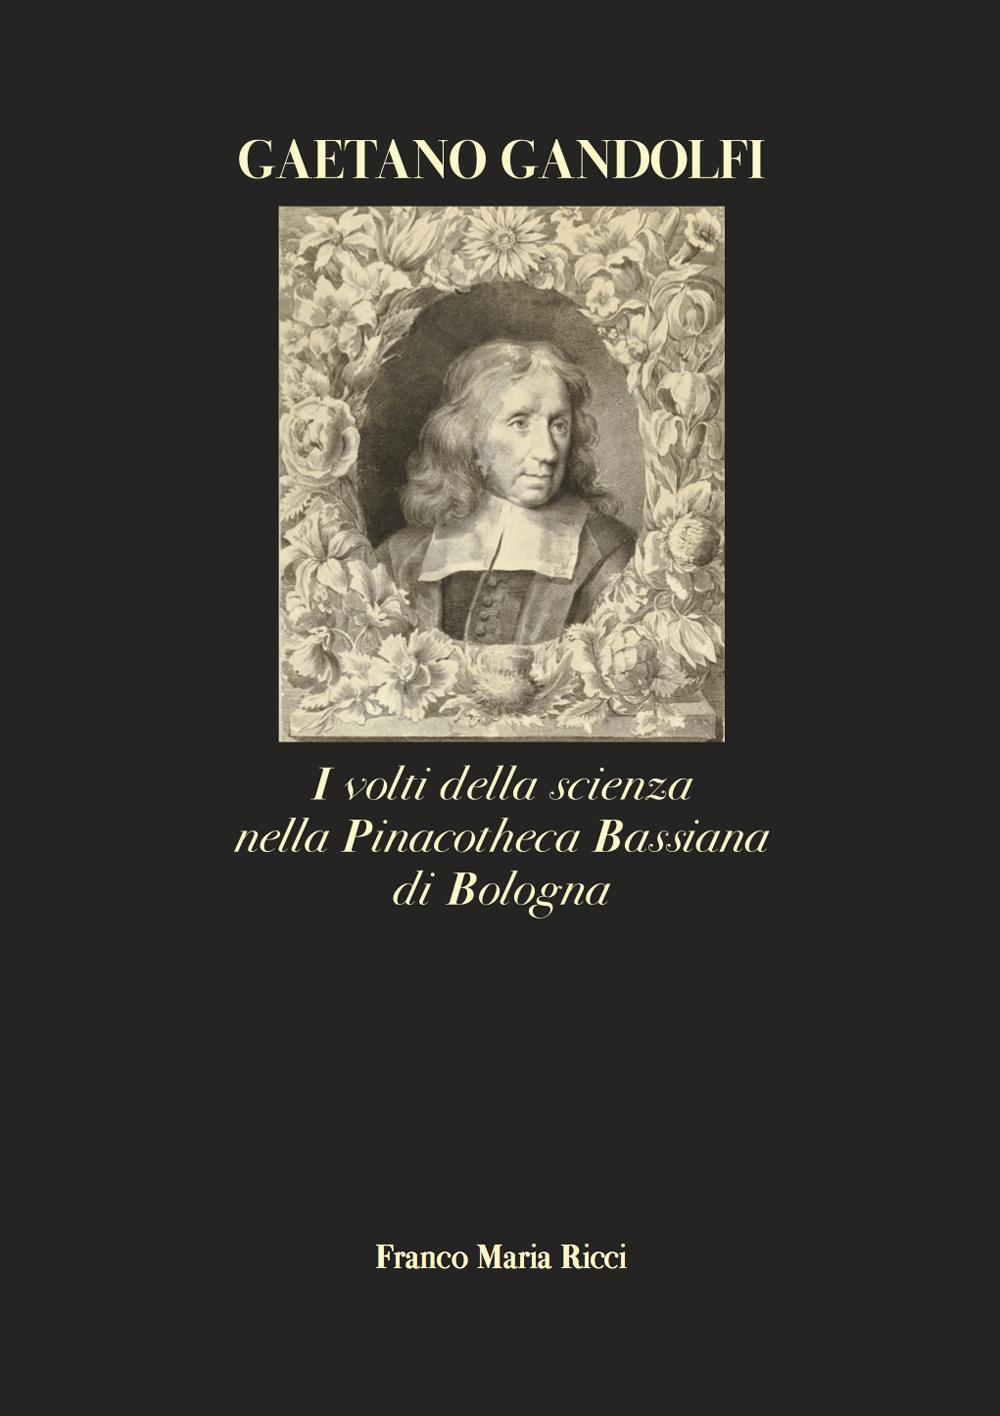 Gaetano Gandolfi. I volti della scienza nella Pinacotheca Bassiana di Bologna. Ediz. illustrata